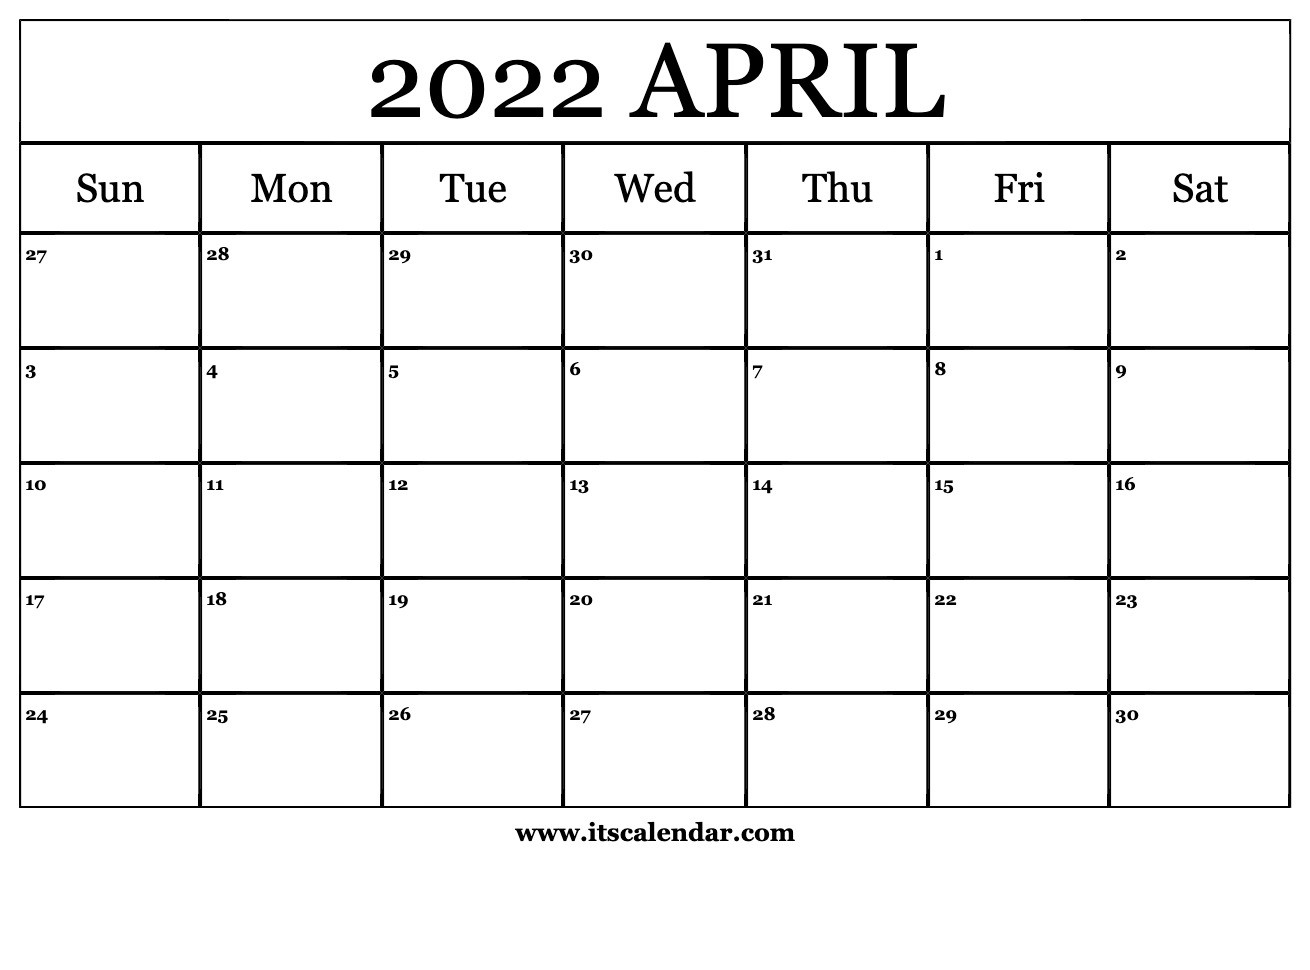 Free Printable April 2022 Calendar  Calendar 2022 January Through April